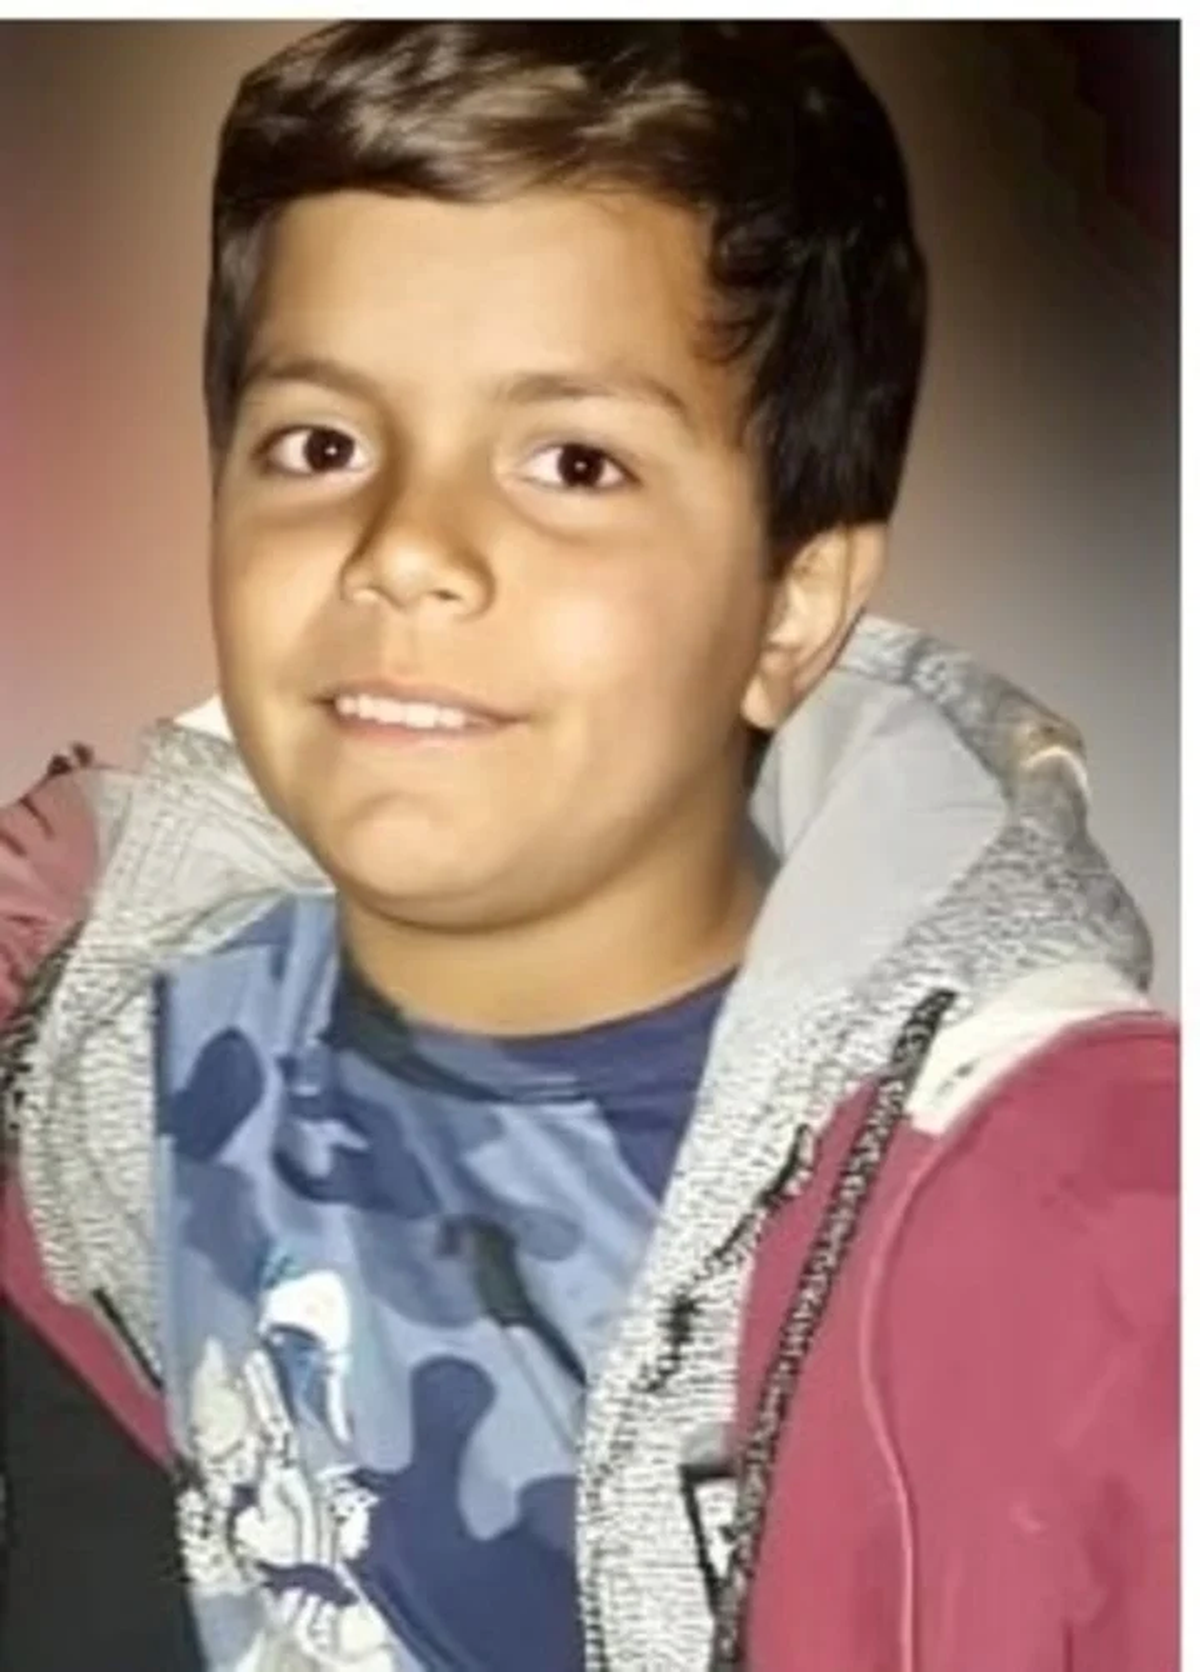 Trágica reunión juvenil: un nene de 12 años murió de un escopetazo